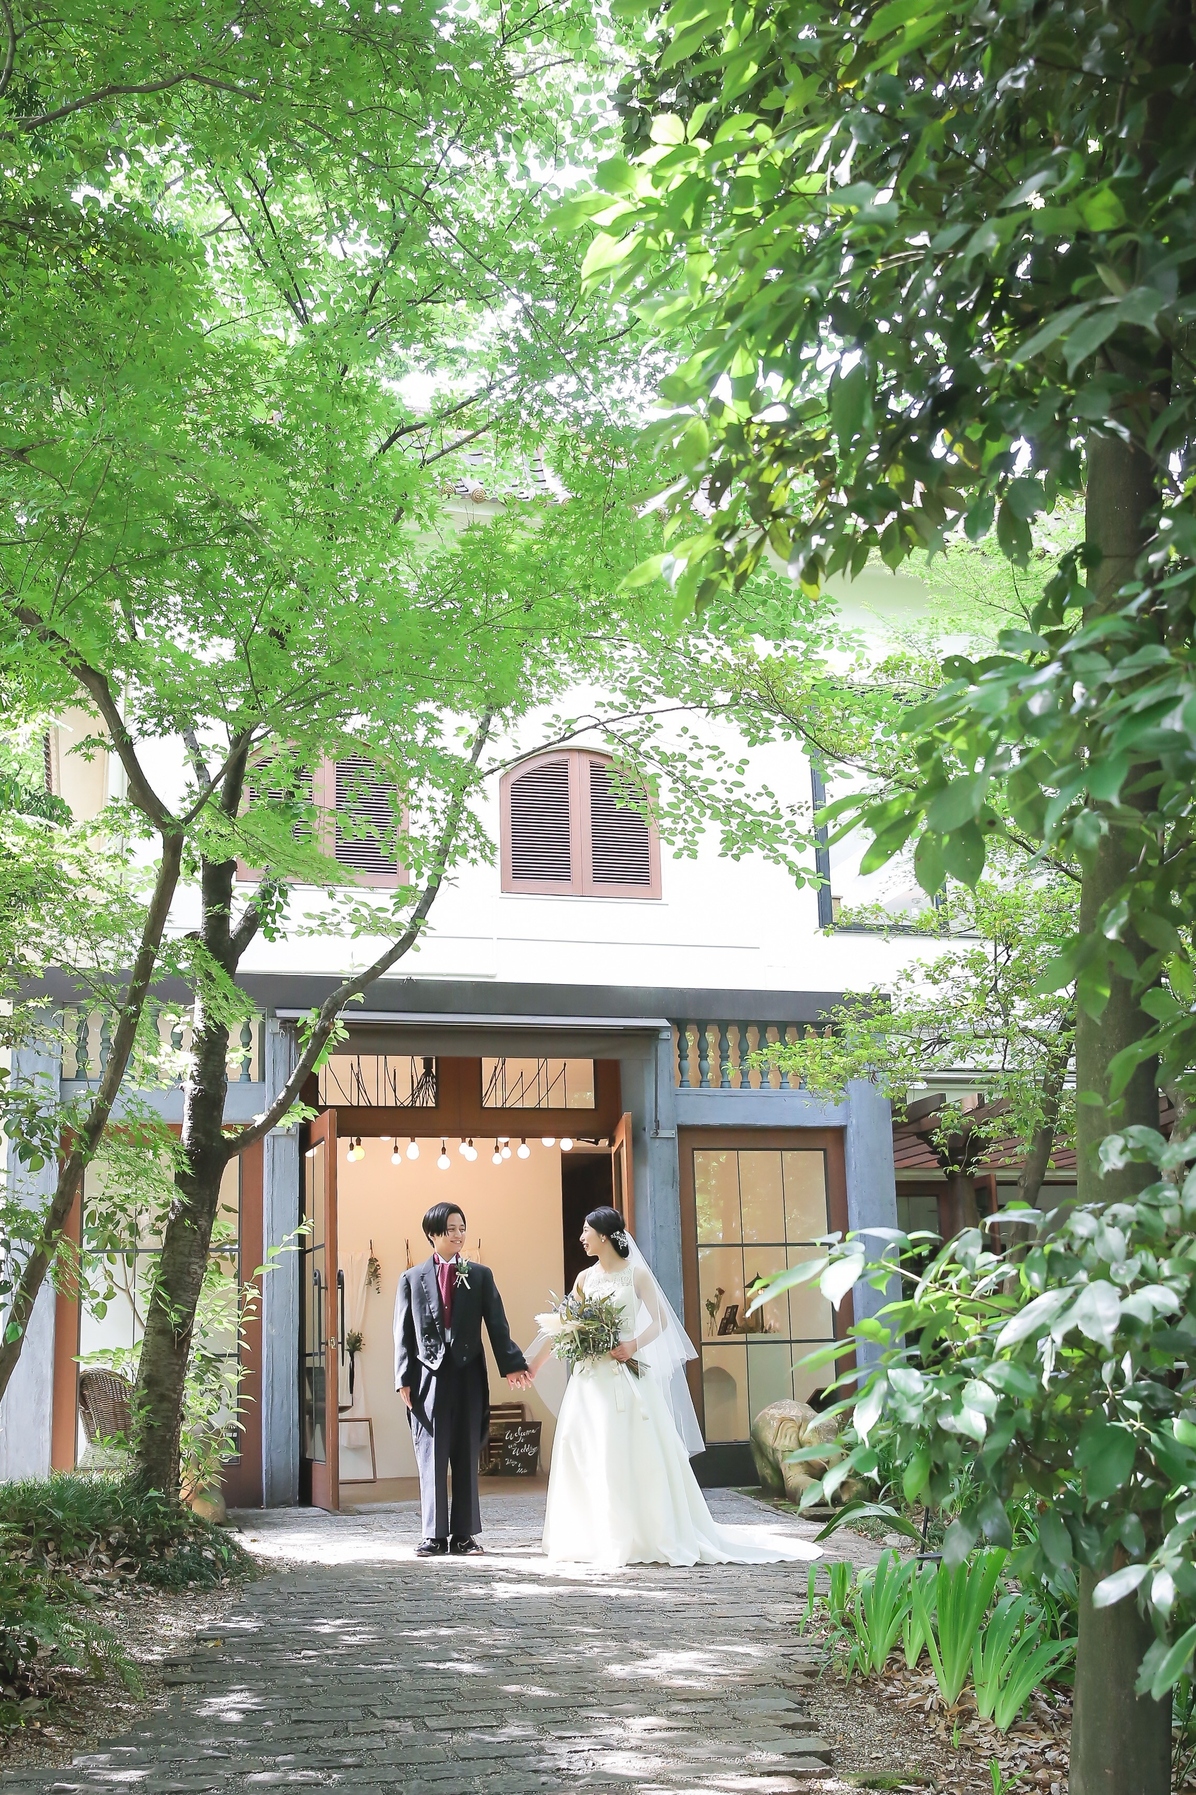 ザ ナンザンハウス The Nanzan House の口コミ 716件 ウェディングニュース結婚式場検索